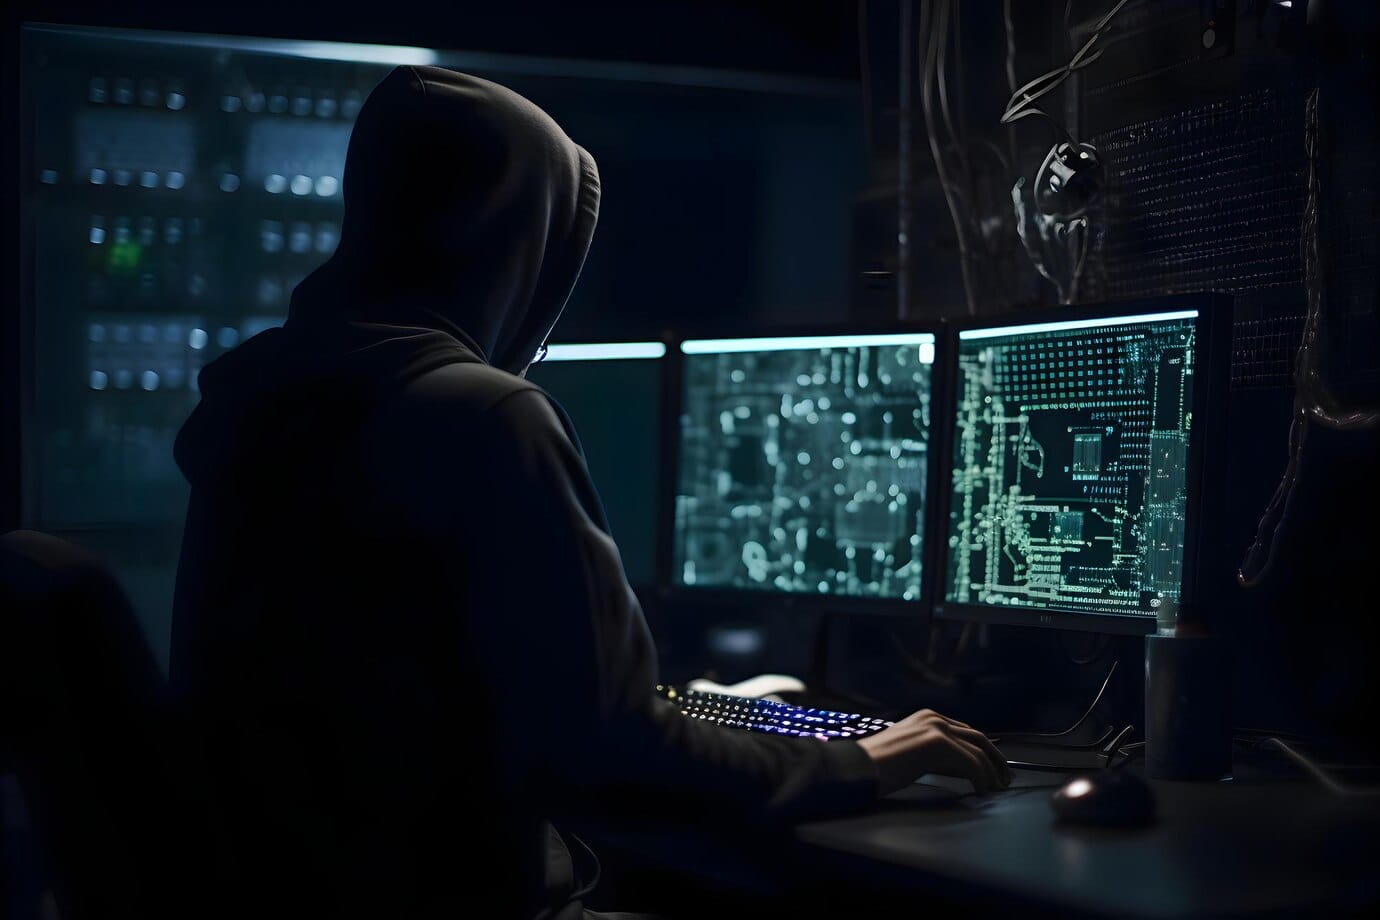 Influenciador digital é preso por roubar quase R$ 4 milhões em criptomoedas